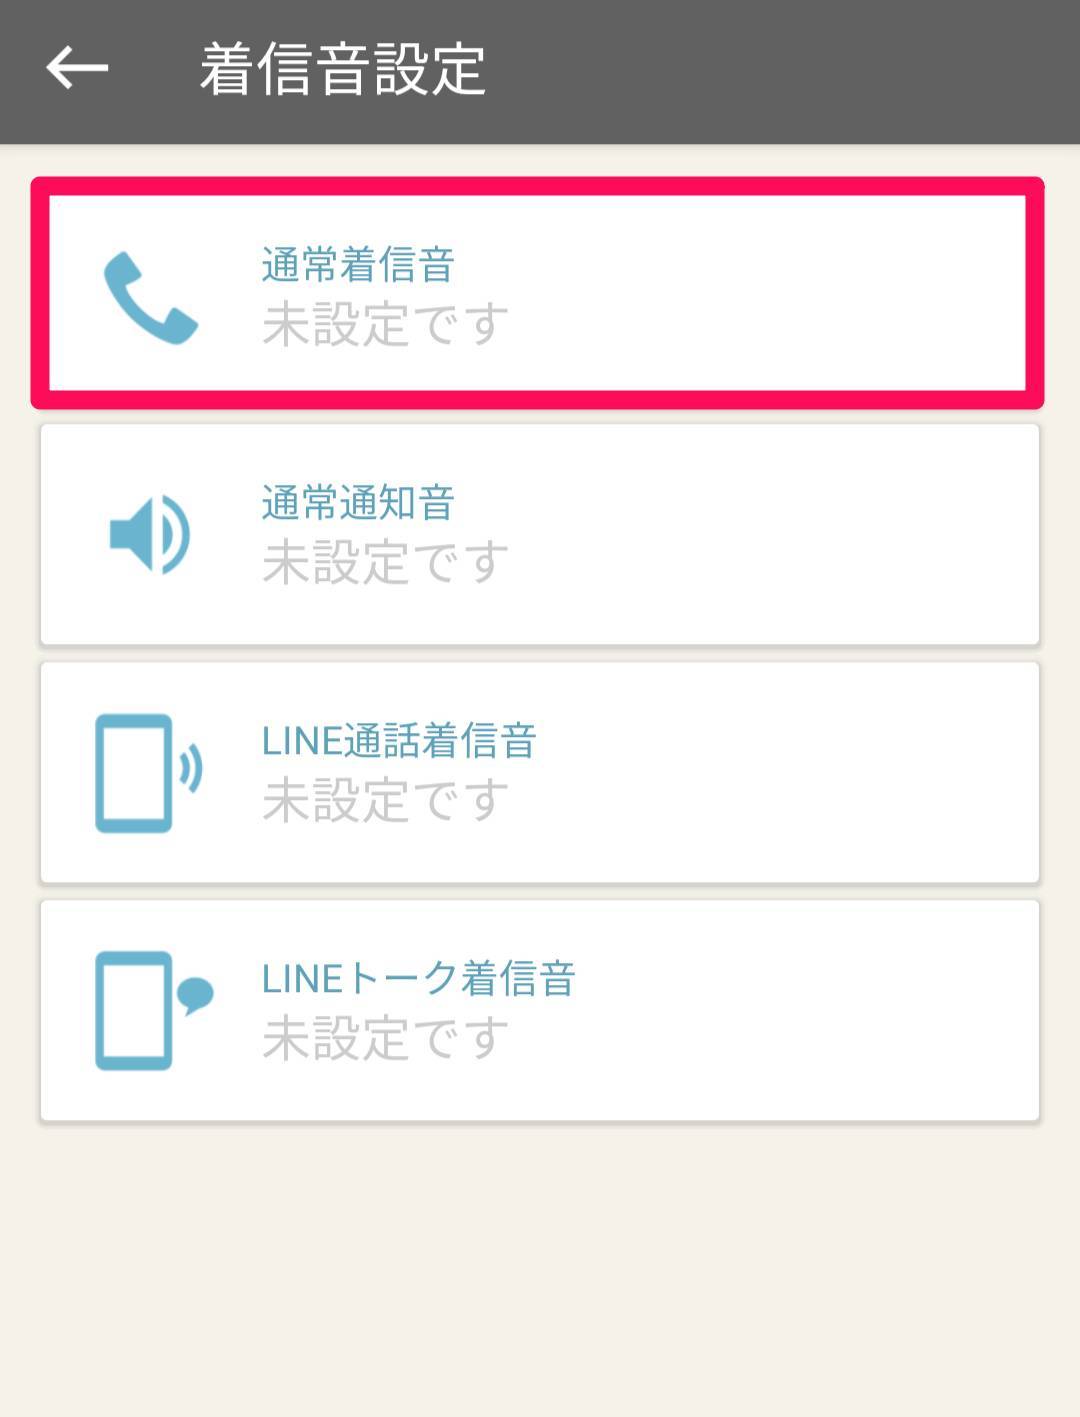 Androidスマホの着信音 通知音の変更方法 好きな曲の設定方法 Appliv Topics